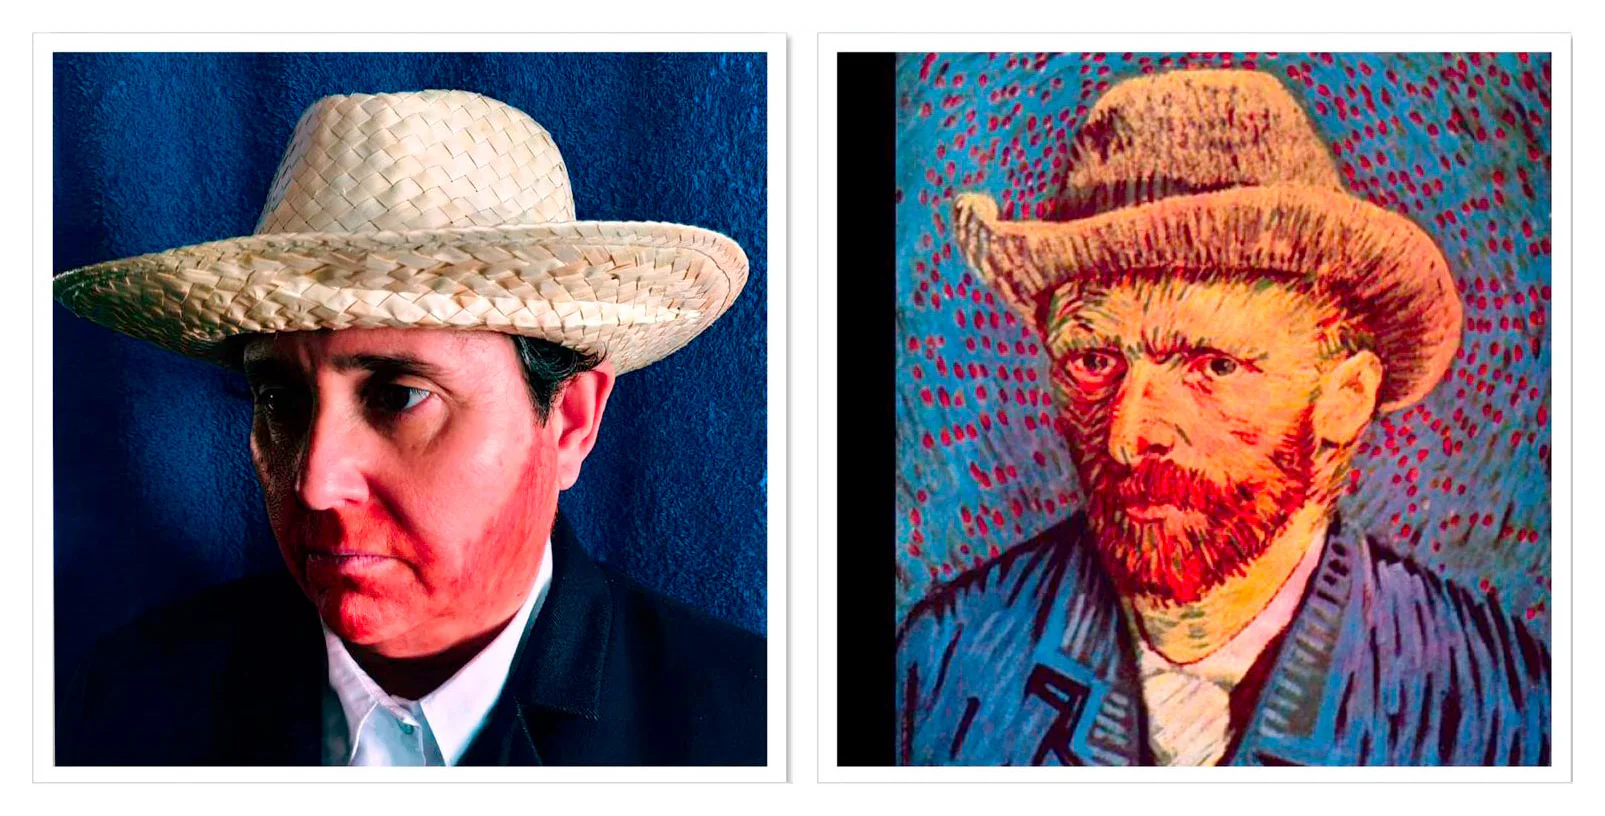 Título del cuadro: ‘Autorretrato con sombrero de fieltro’. Autor/a: Vincent van Gogh. Pintado: 1887-1888. Maestro/a imitador: Conchi Allica, Maestra de Primaria.